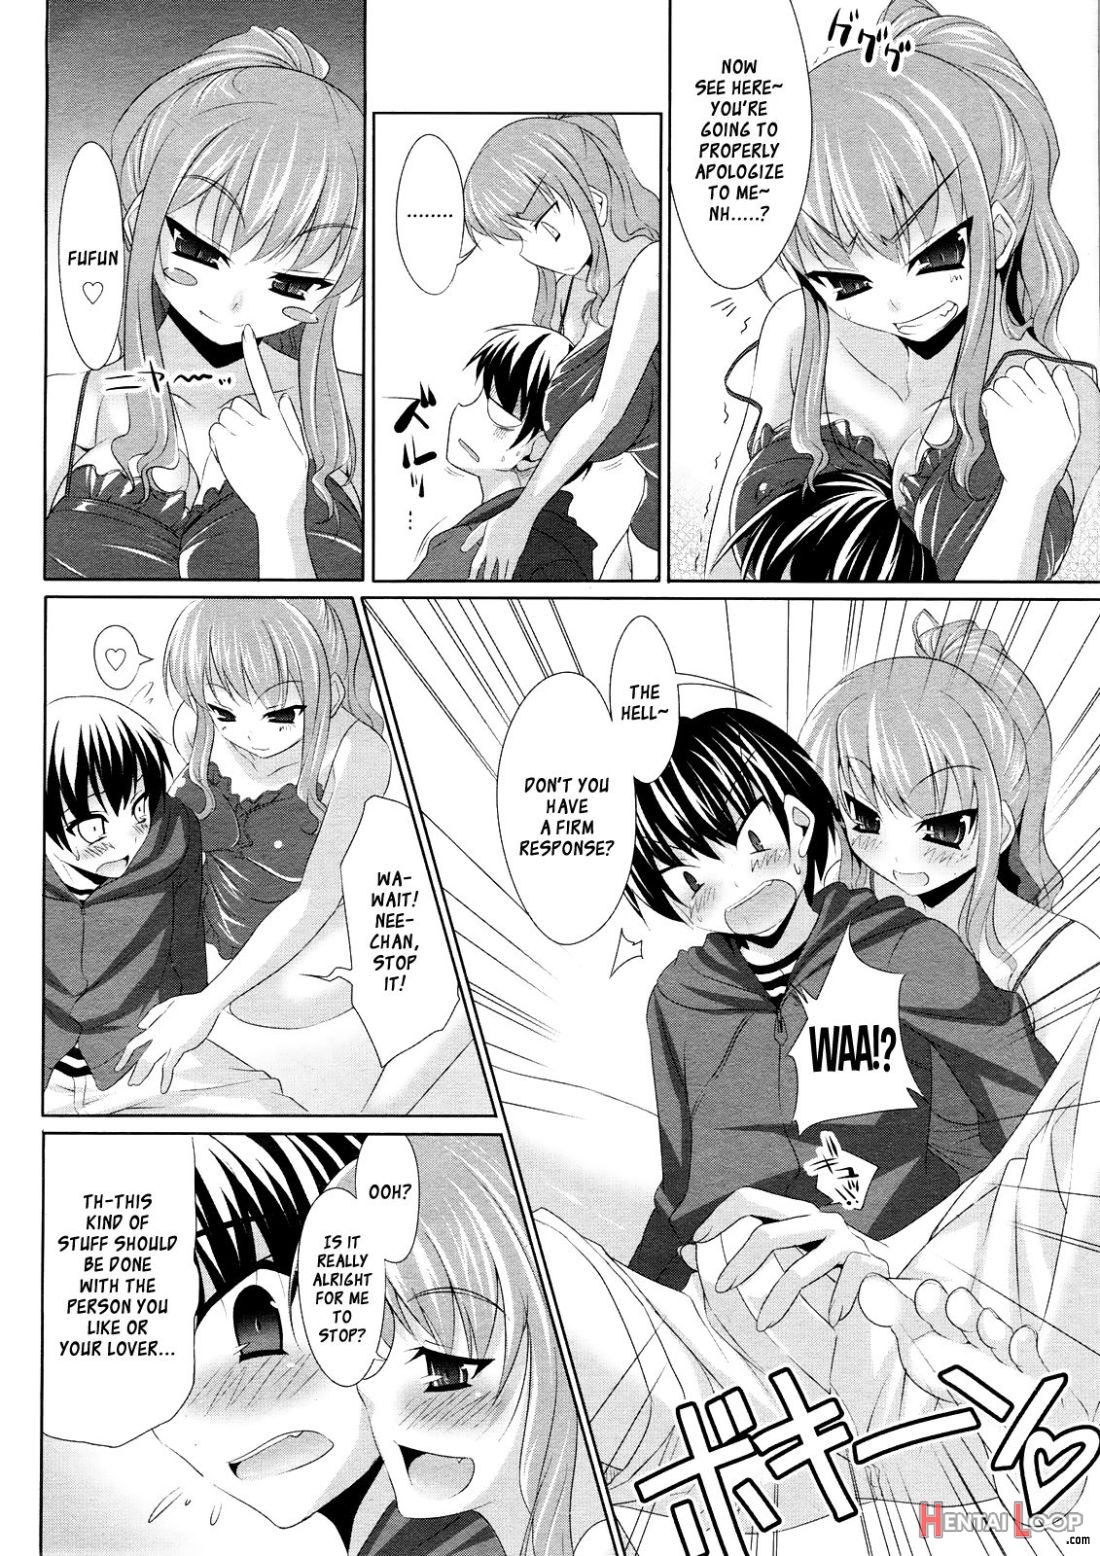 Zatsu Ane page 4